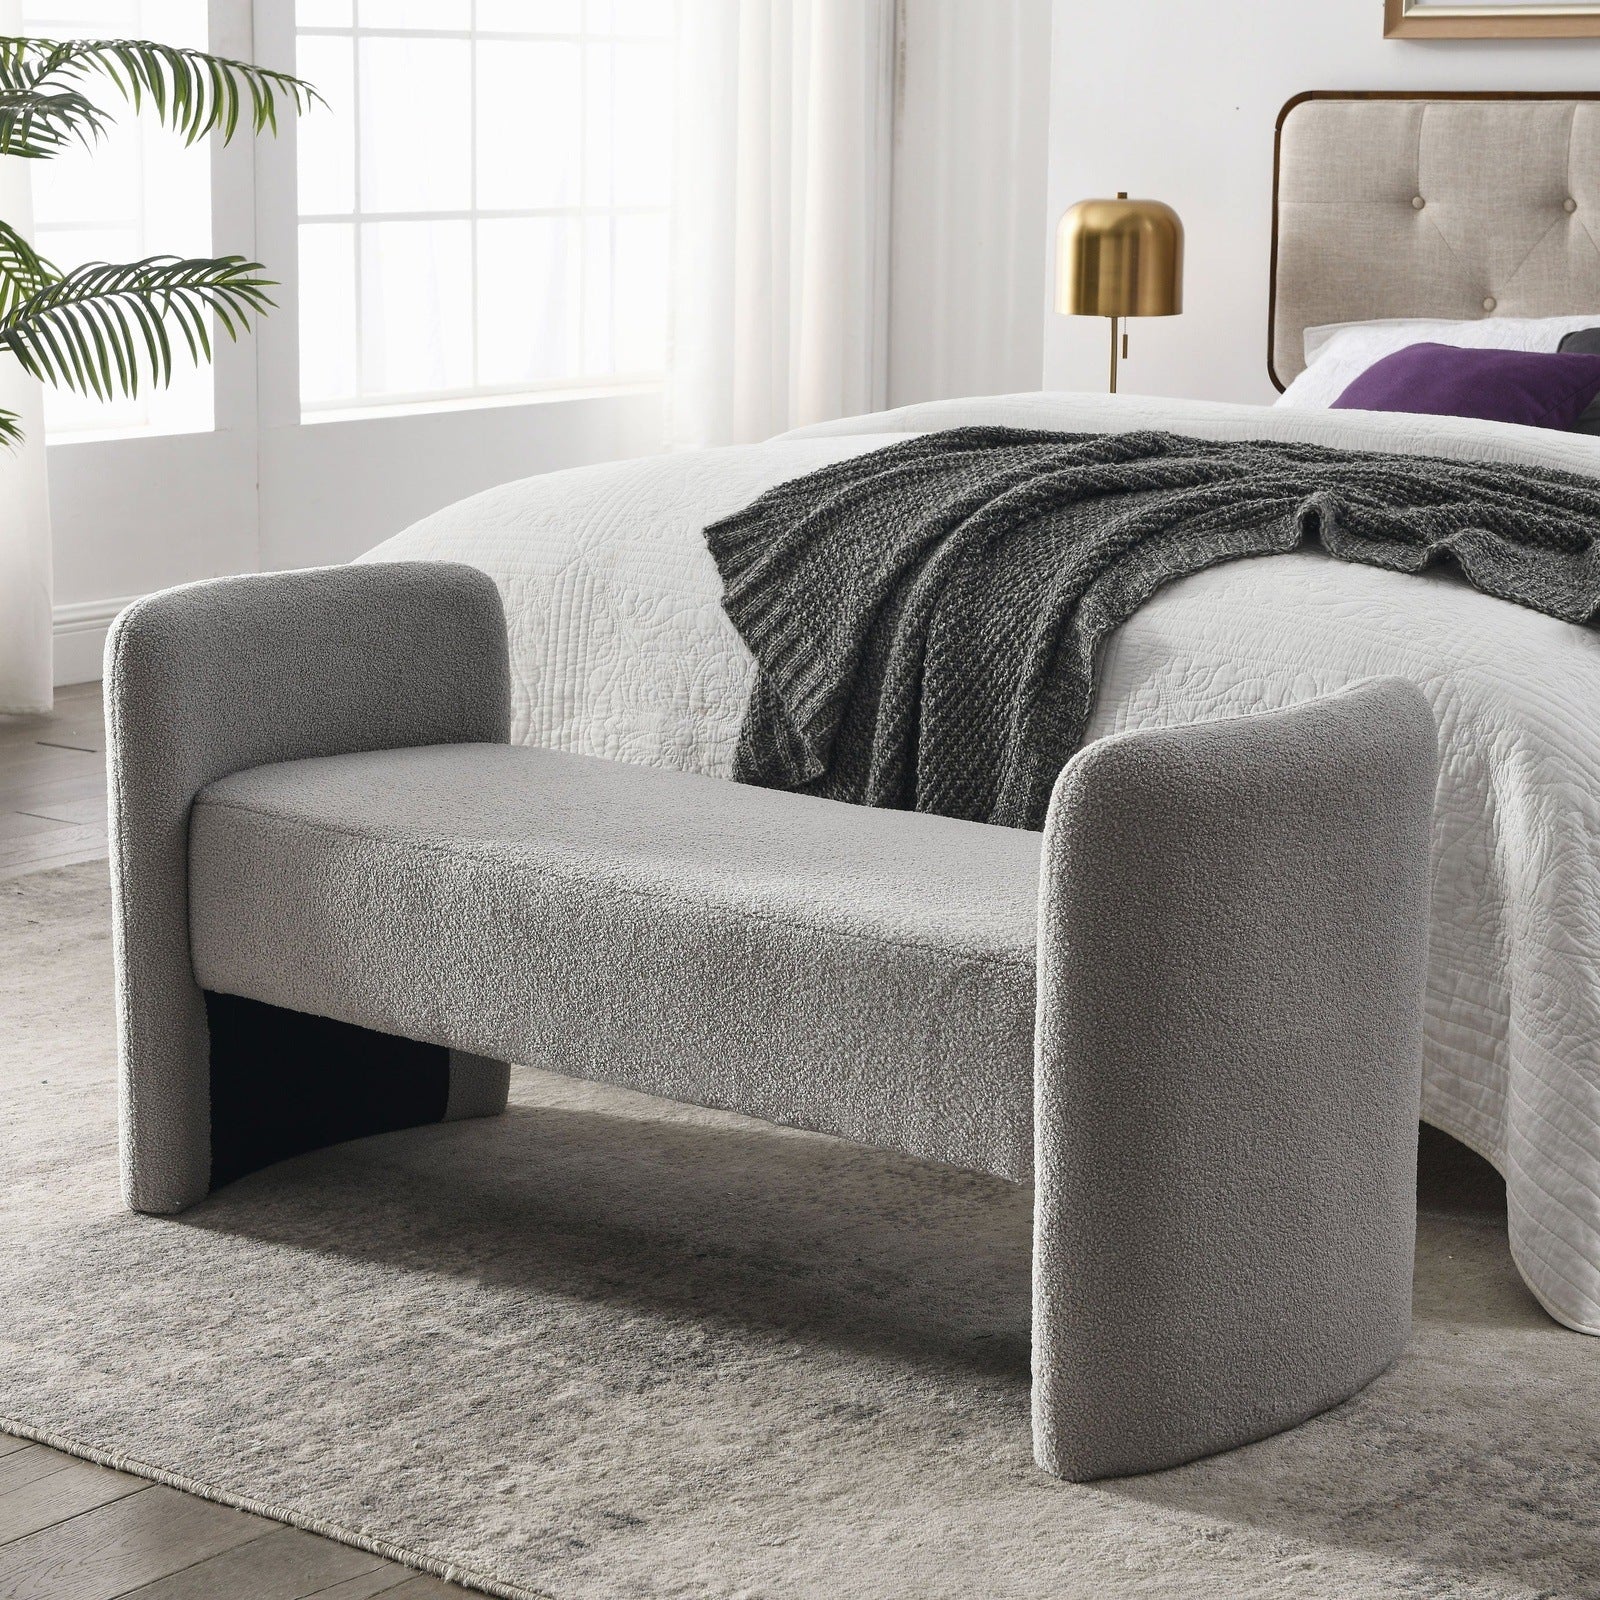 Welike 52" Teddy Fabric Upholstered Bedroom Bench - Gray